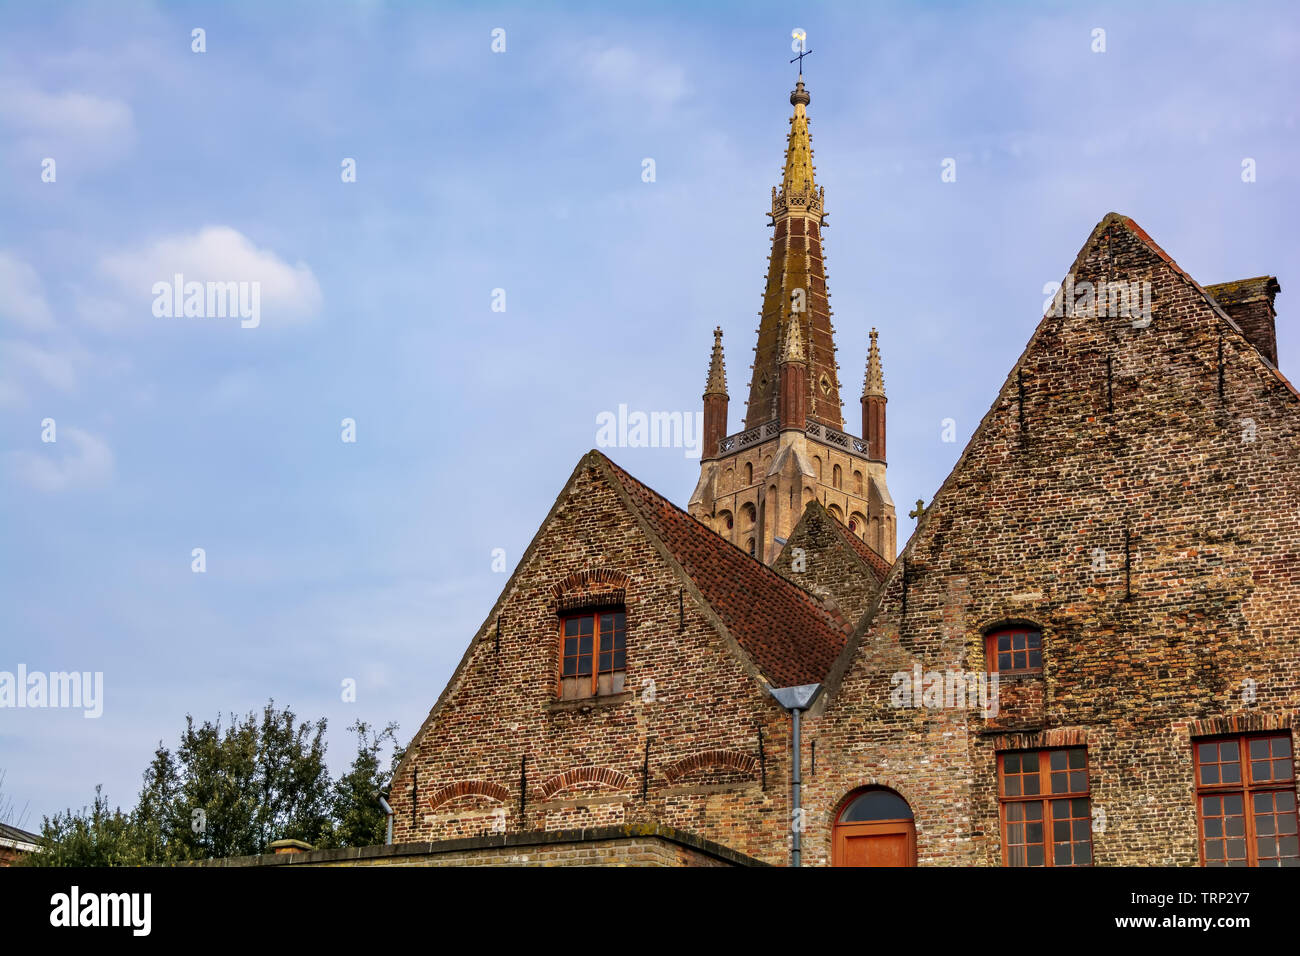 L'église de Notre Dame (Onze-Lieve-Vrouwekerk) tour vu derrière des maisons médiévales contre le ciel bleu. Cette tour gothique de l'est 122,3 mètres de haut Banque D'Images